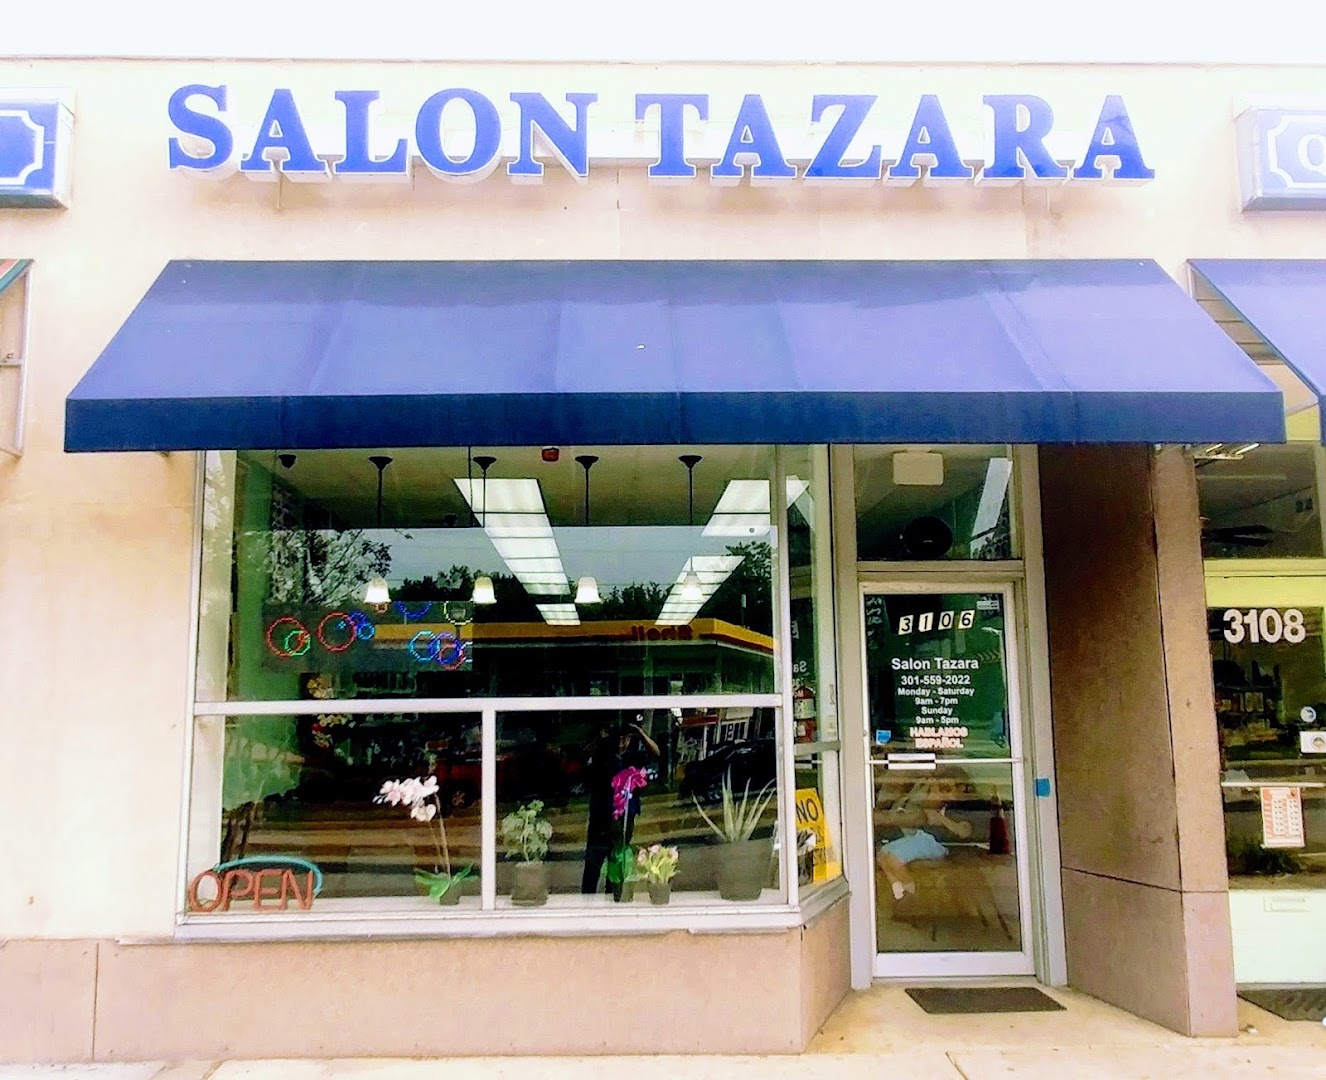 Salon Tazara